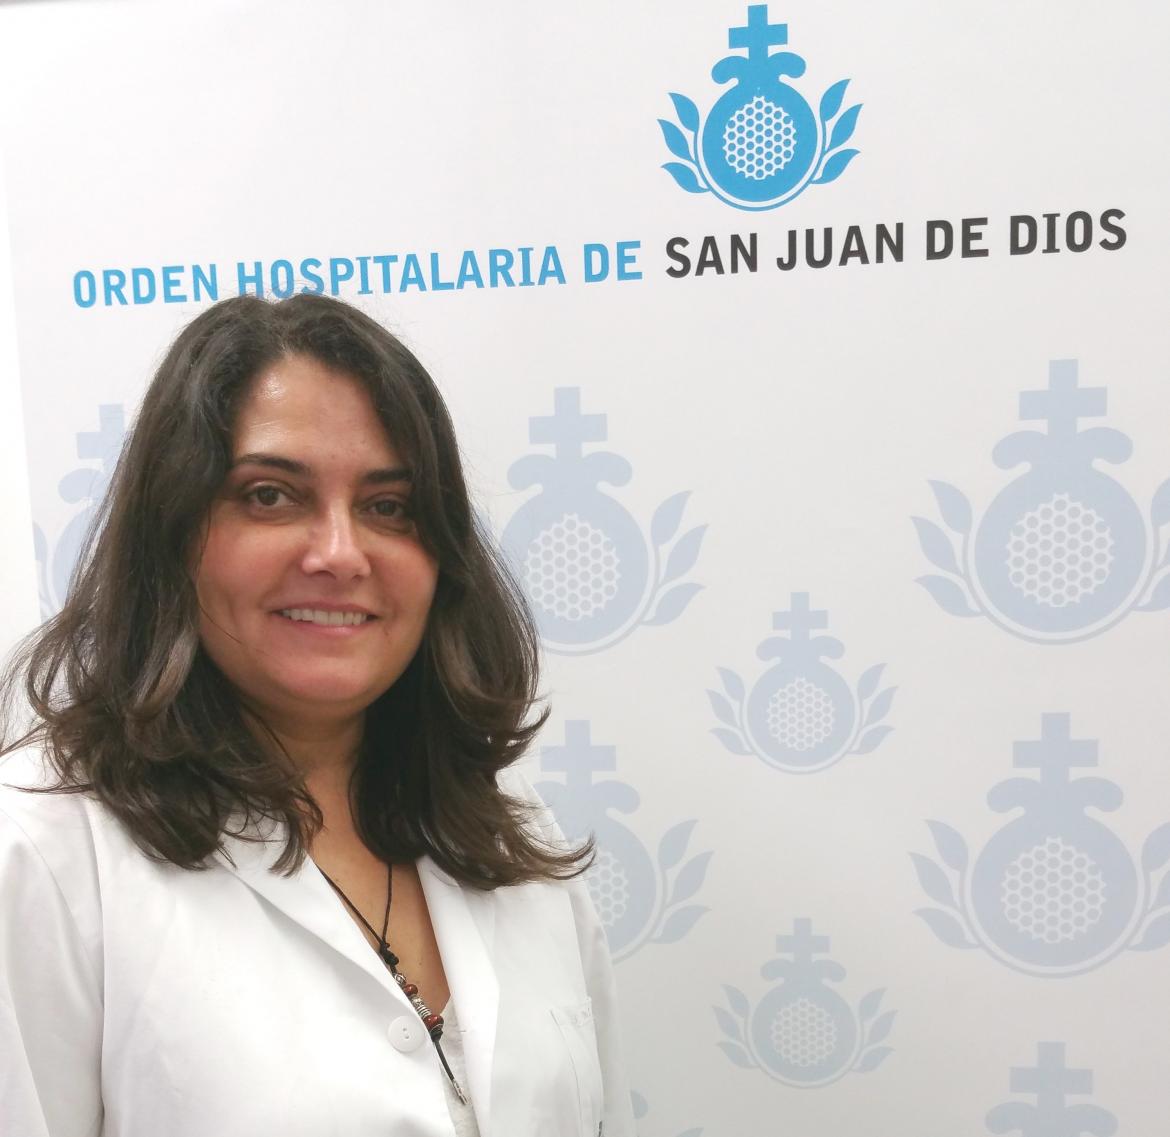 El Hospital San Juan de Dios de Tenerife fomenta la seguridad del paciente